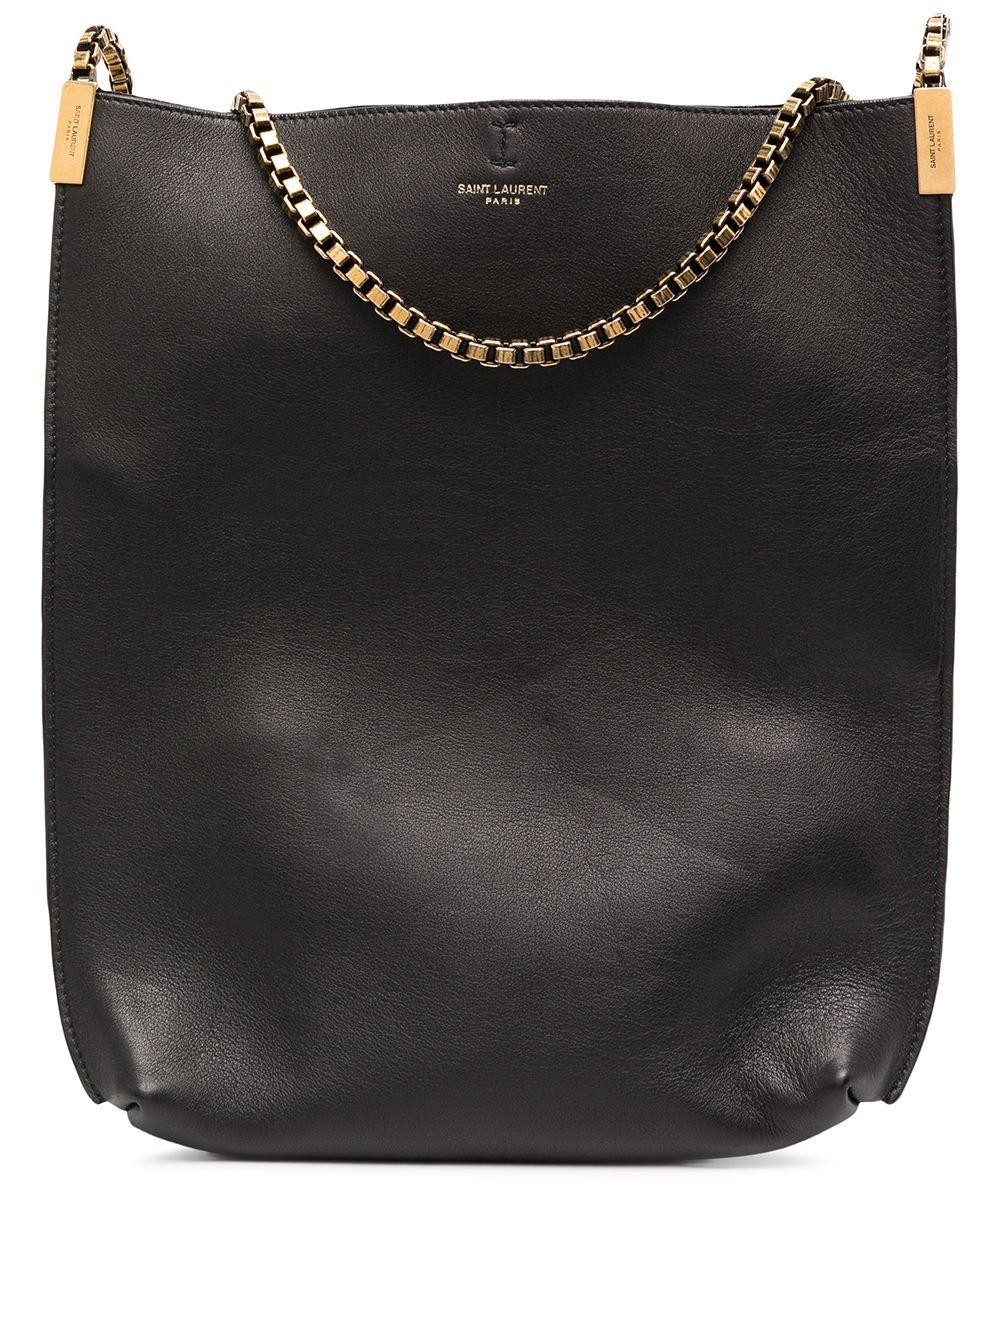 Saint Laurent Leather Chain Strap Hobo Shoulder Bag in Black - Lyst